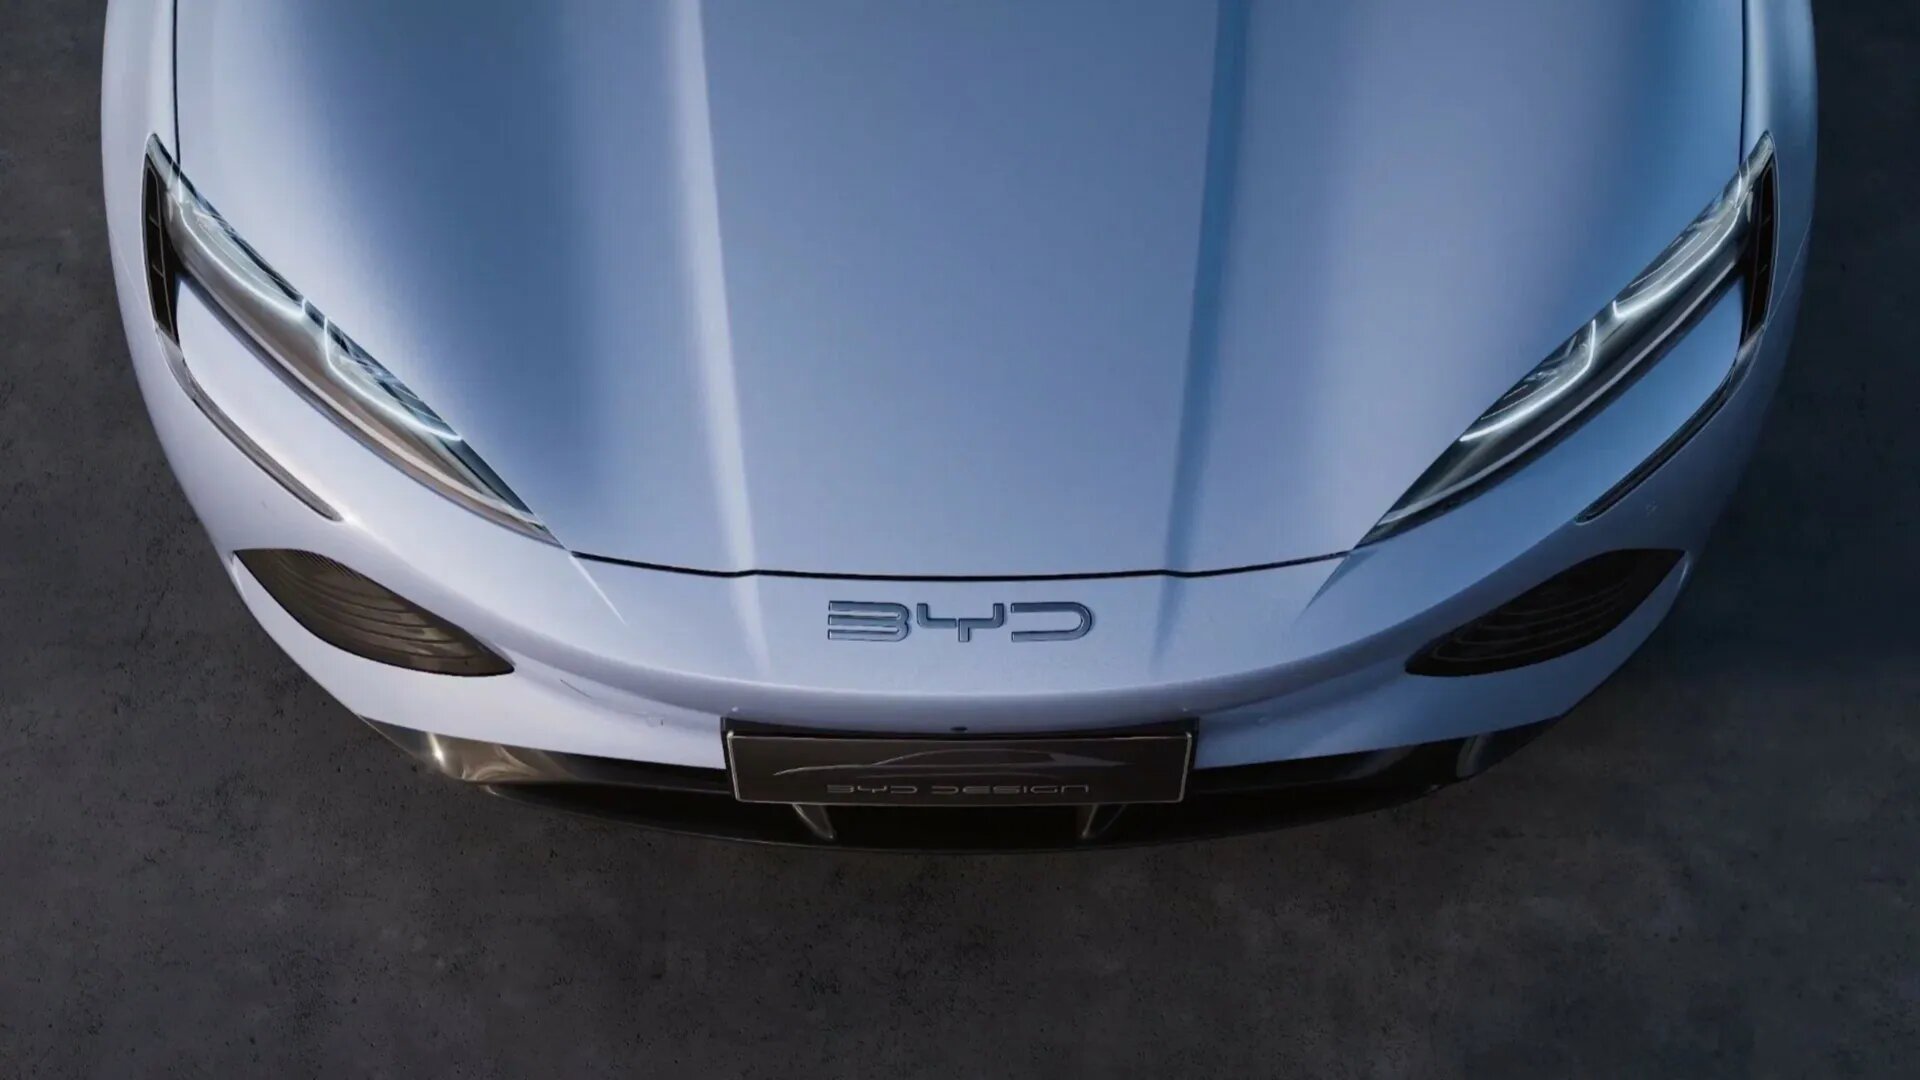 Китайская марка BYD обогнала Tesla по продажам электрокаров, но с оговоркой